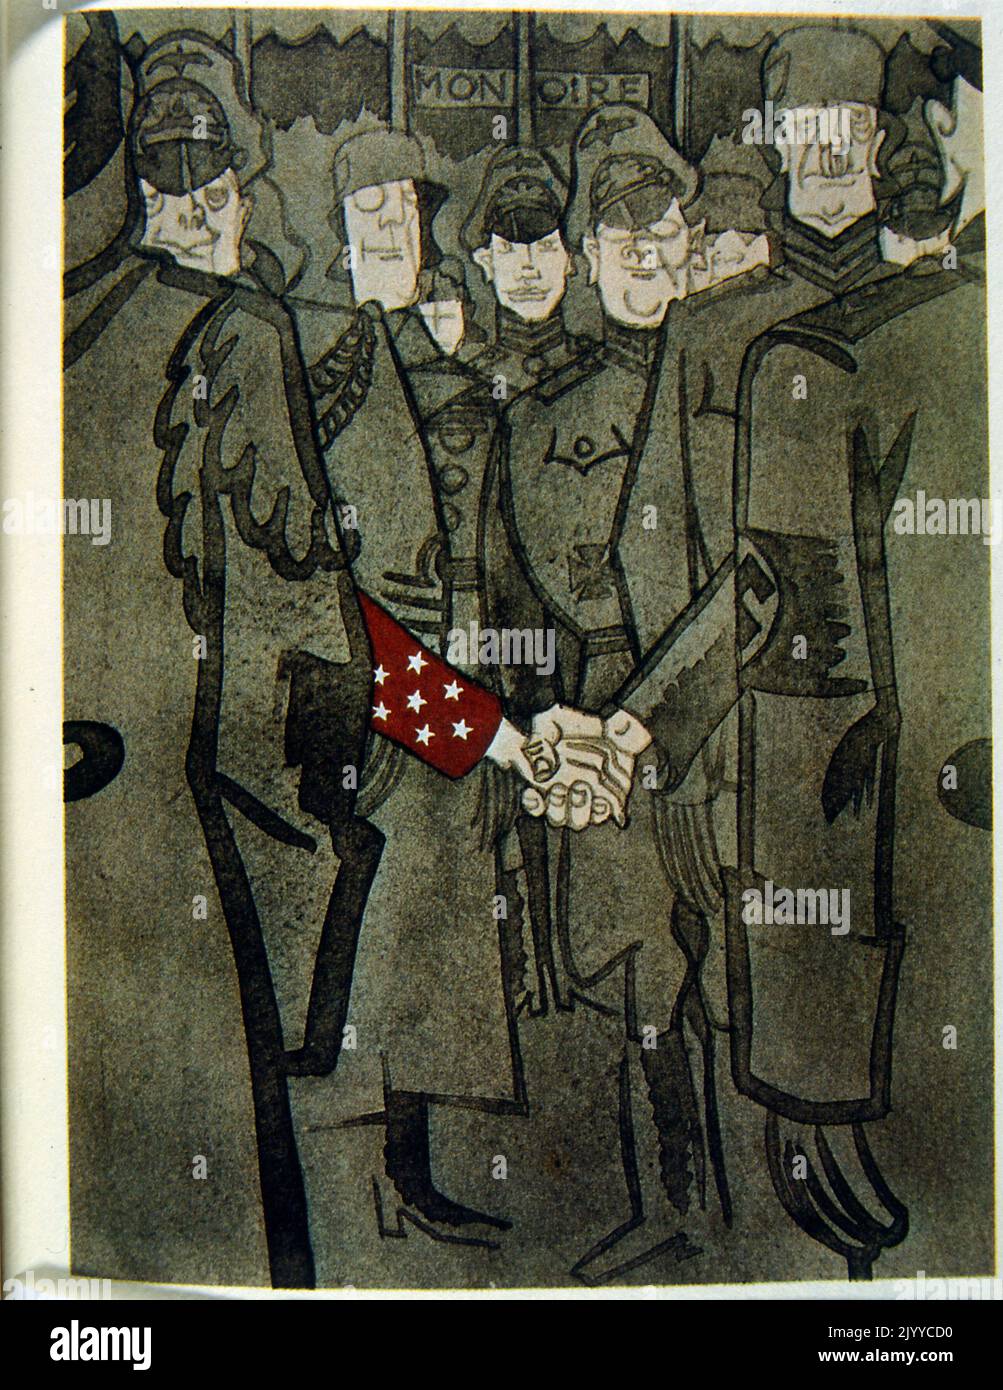 Satirische Illustration mit Soldaten, die in Reihen stehen. Amerika, gekennzeichnet durch Sterne auf einem roten Ärmel, reicht Nazi-Deutschland die Hand. Stockfoto